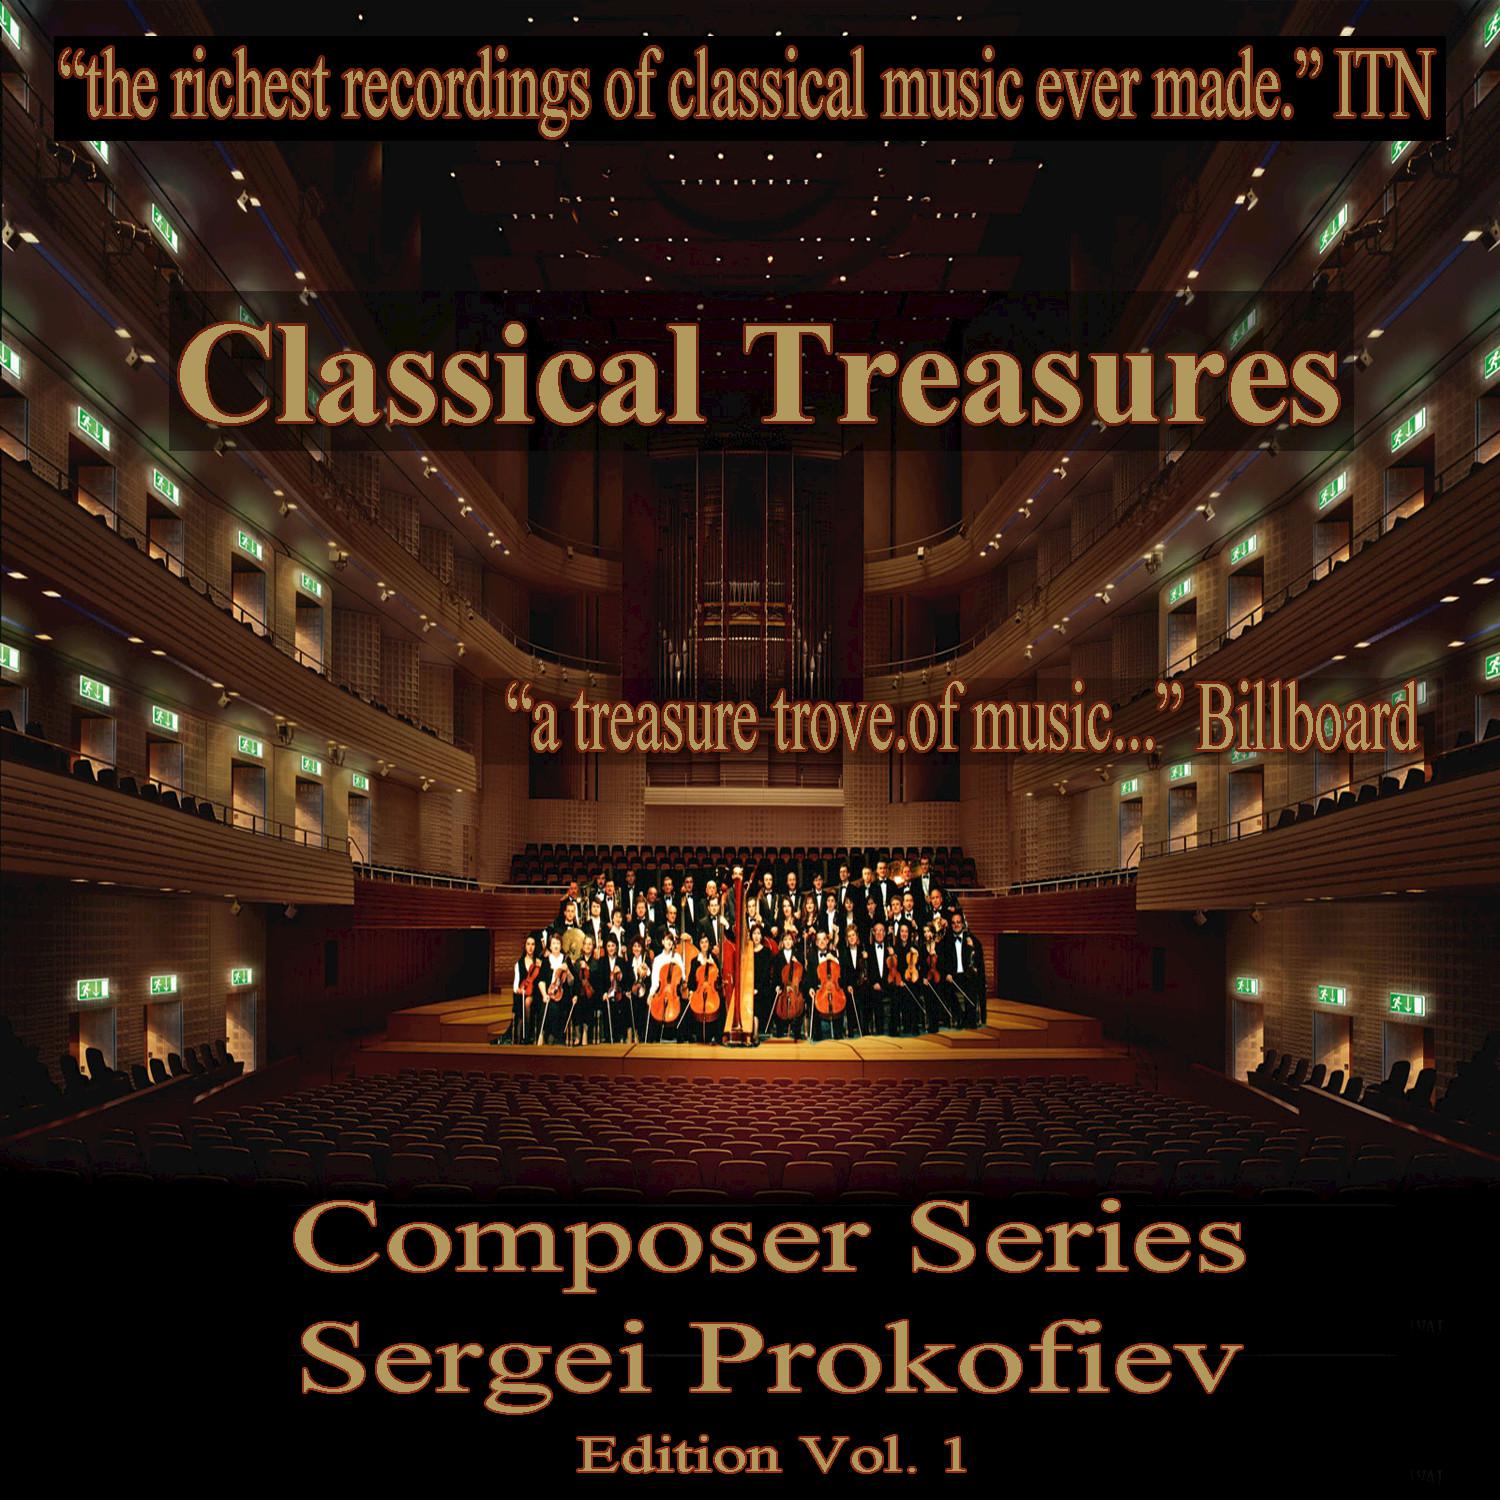 Symphony-Concerto for Cello & Orchestra in E Minor, Op. 125: Allegro giusto